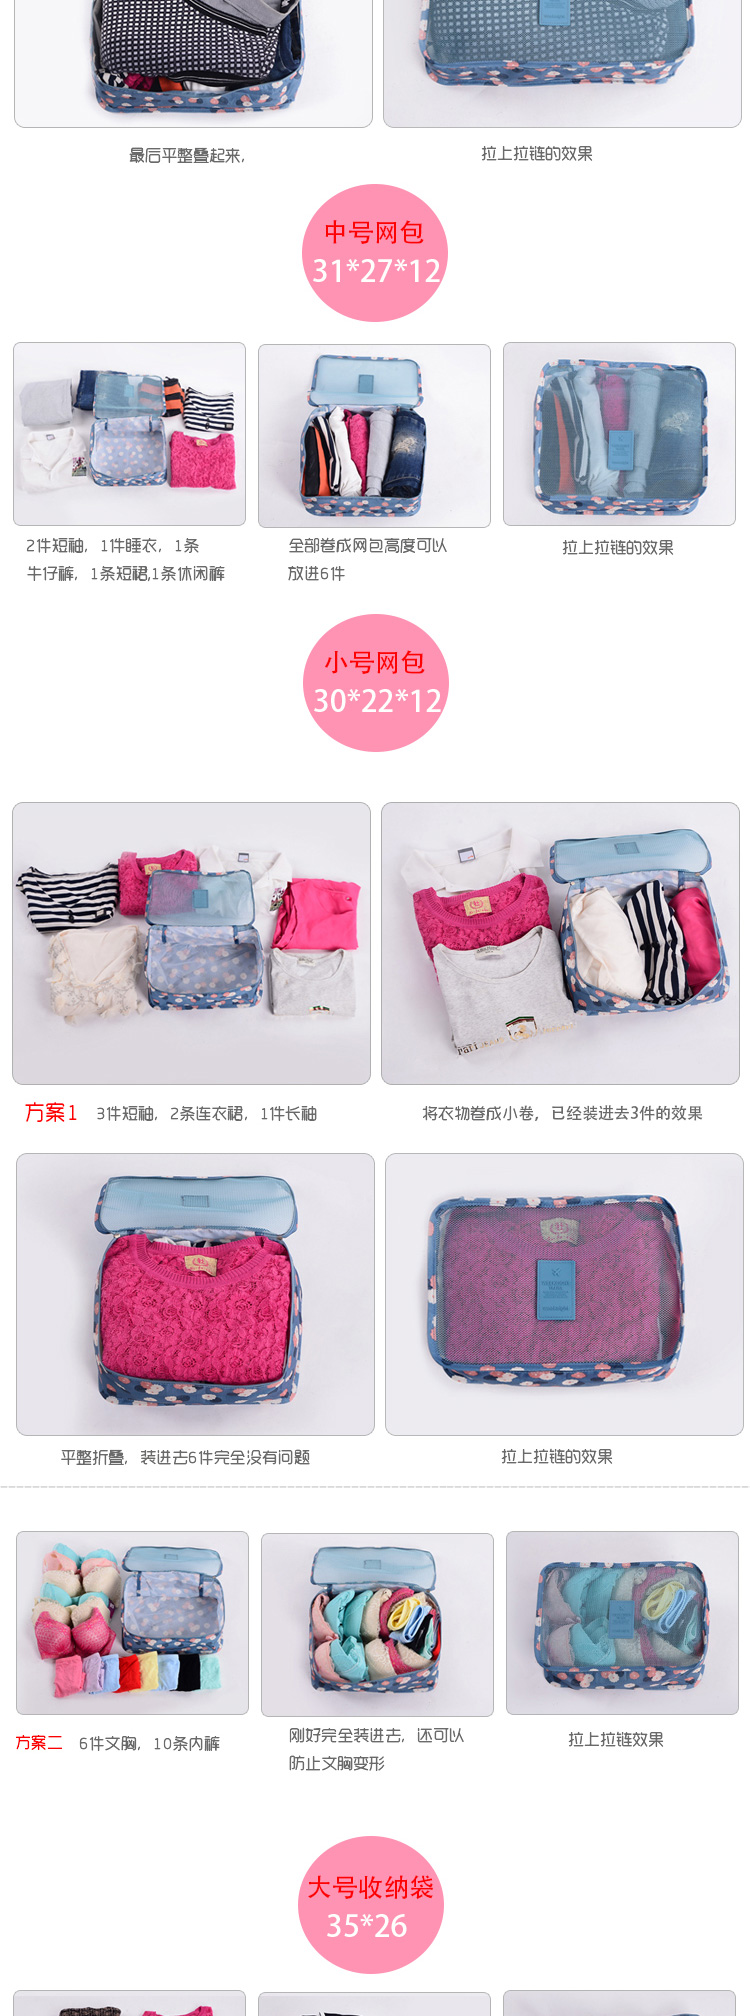 Suitcase suitcase, luggage bag, bag, clothing, clothing, clothing, underwear, underwear, and 6 pieces4